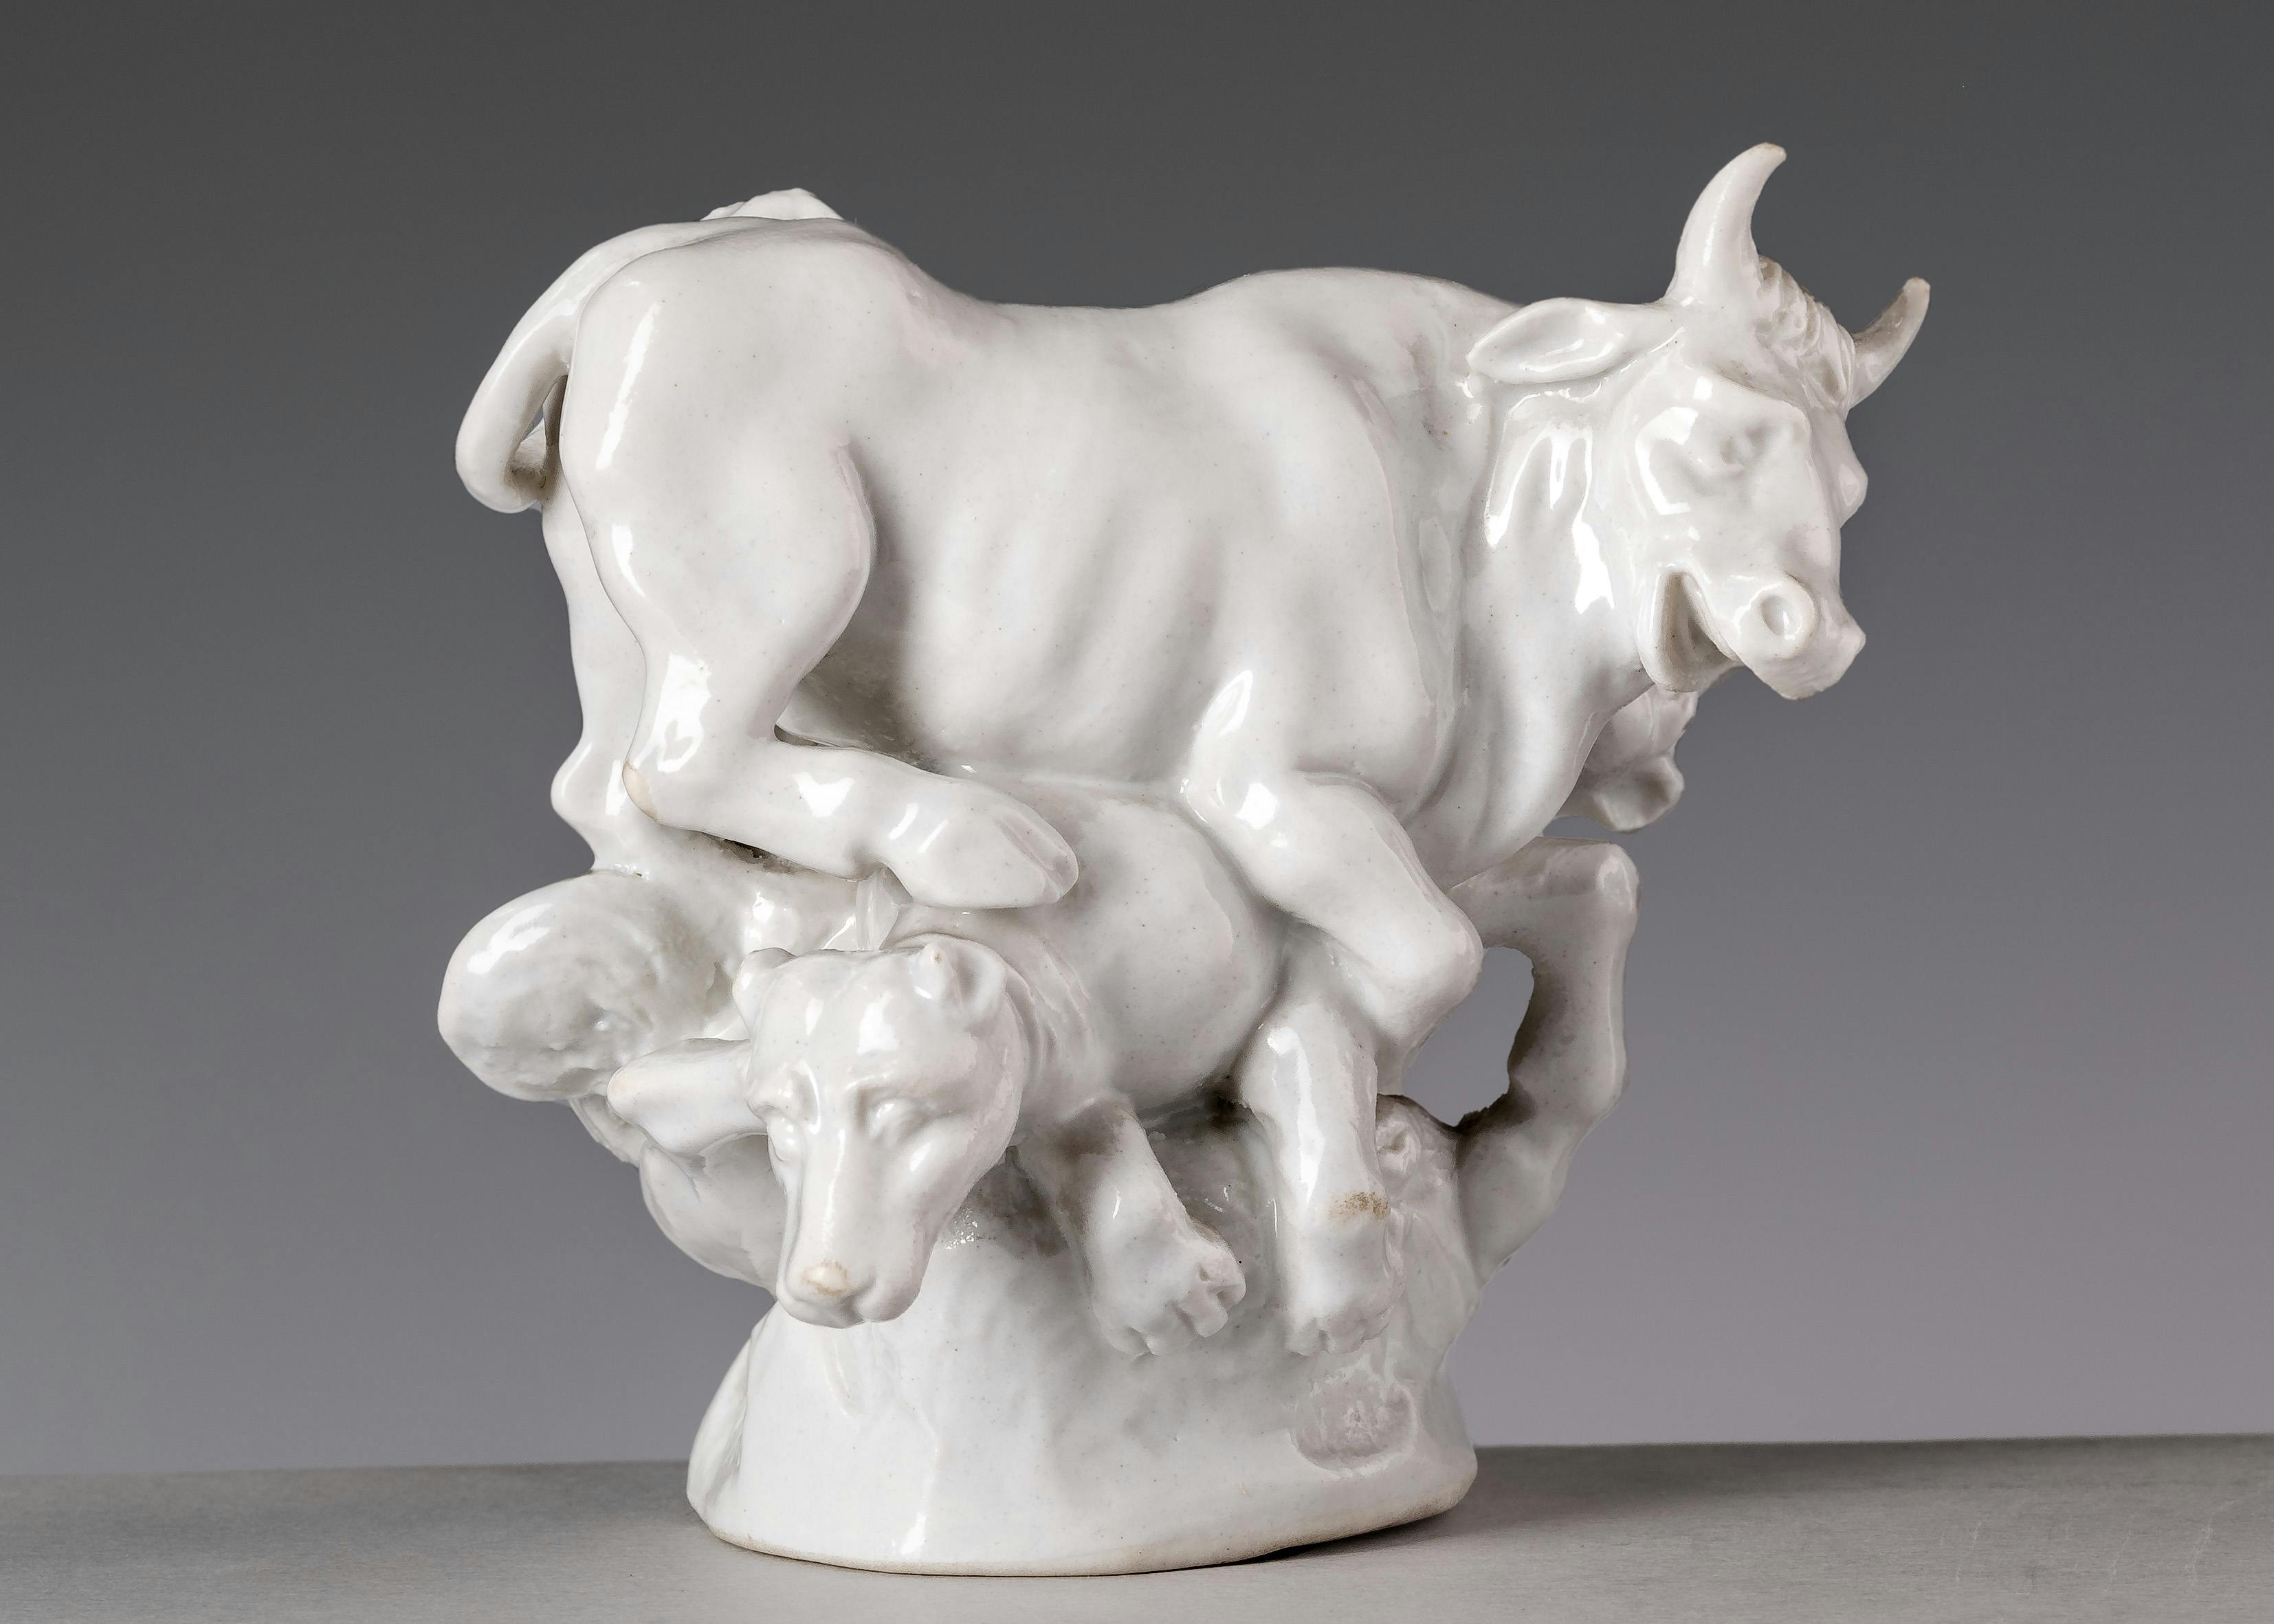 Piccola scultura in porcellana bianca raffigurante un toro e due cani che compattono